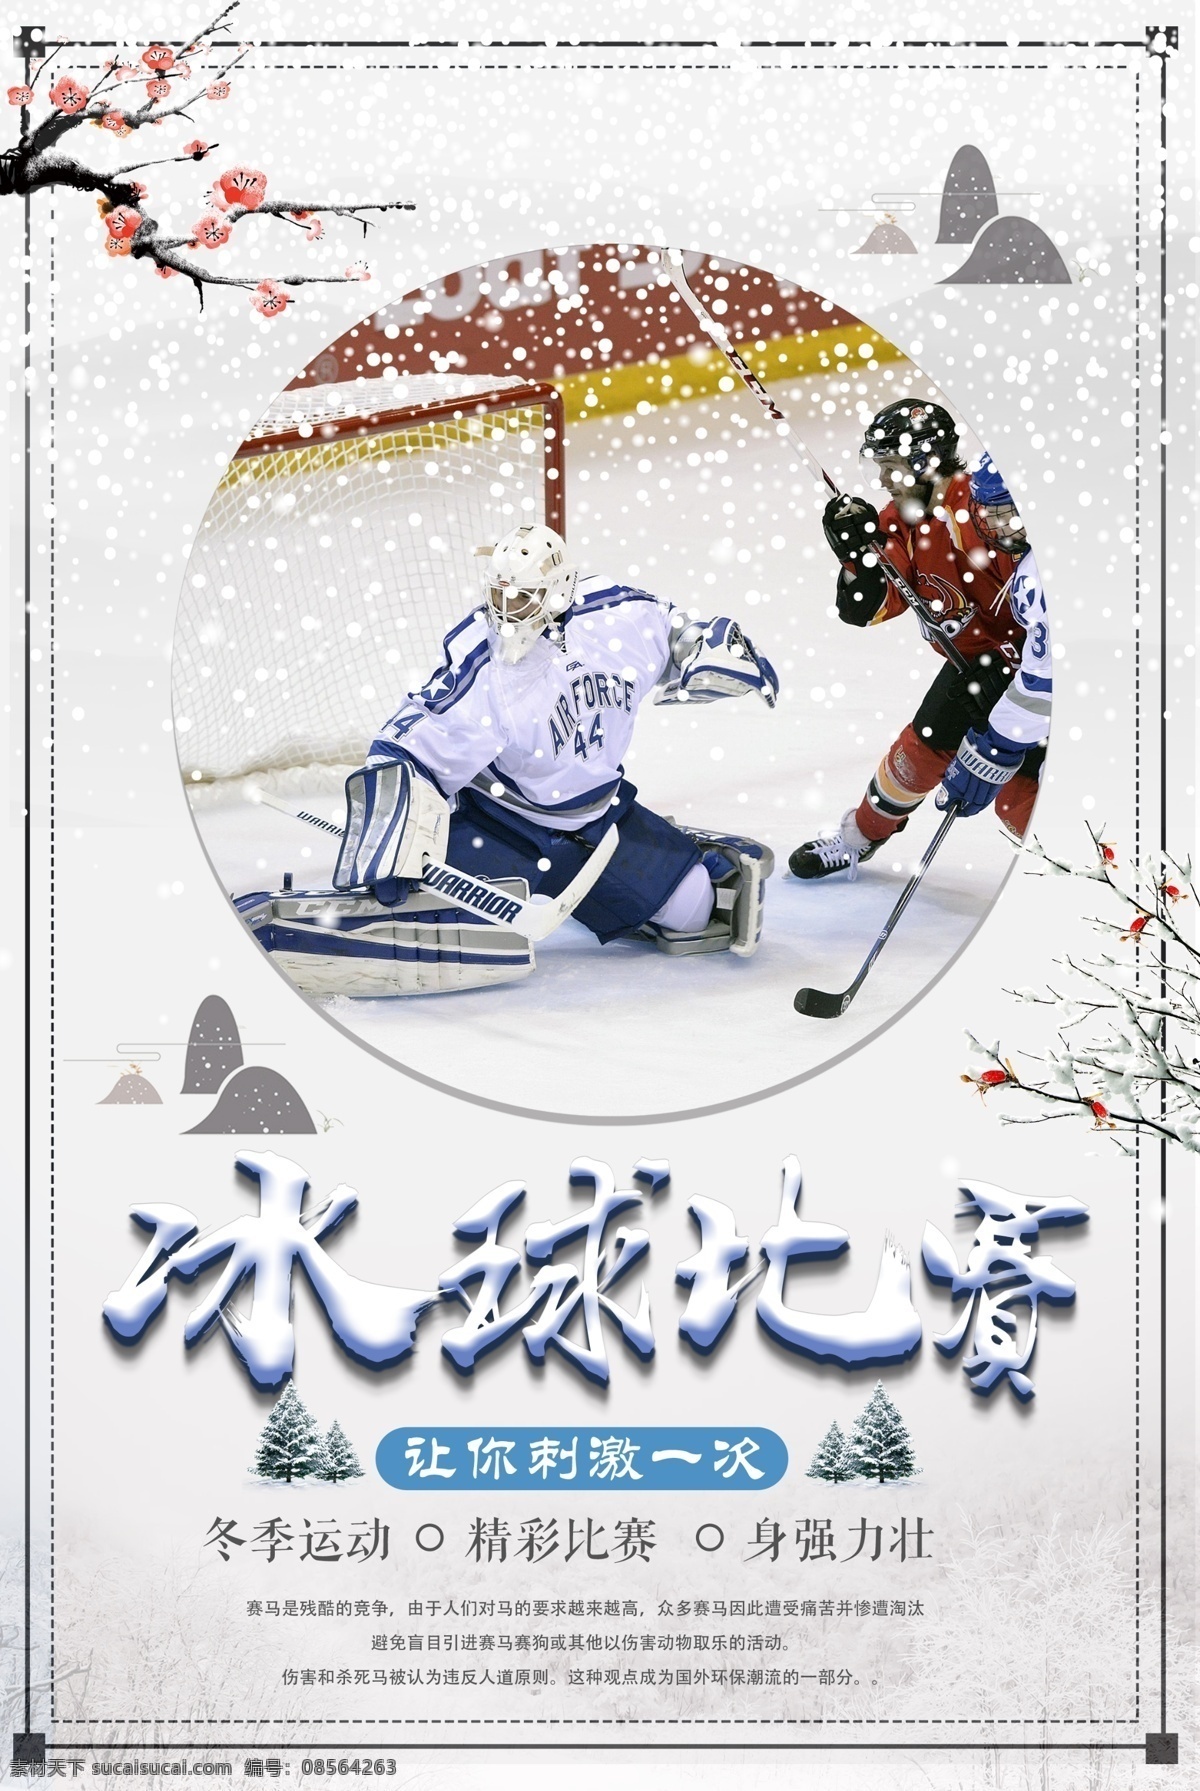 简约 中国 风 冬季 体育运动 冰球 海报 创意海报 运动 游戏 世界 体育竞技 体育招生 冬季特惠 冬 冬天 元旦 冰球比赛 体育 滑雪场海报 海报版式设计 文字排版 冰雪世界